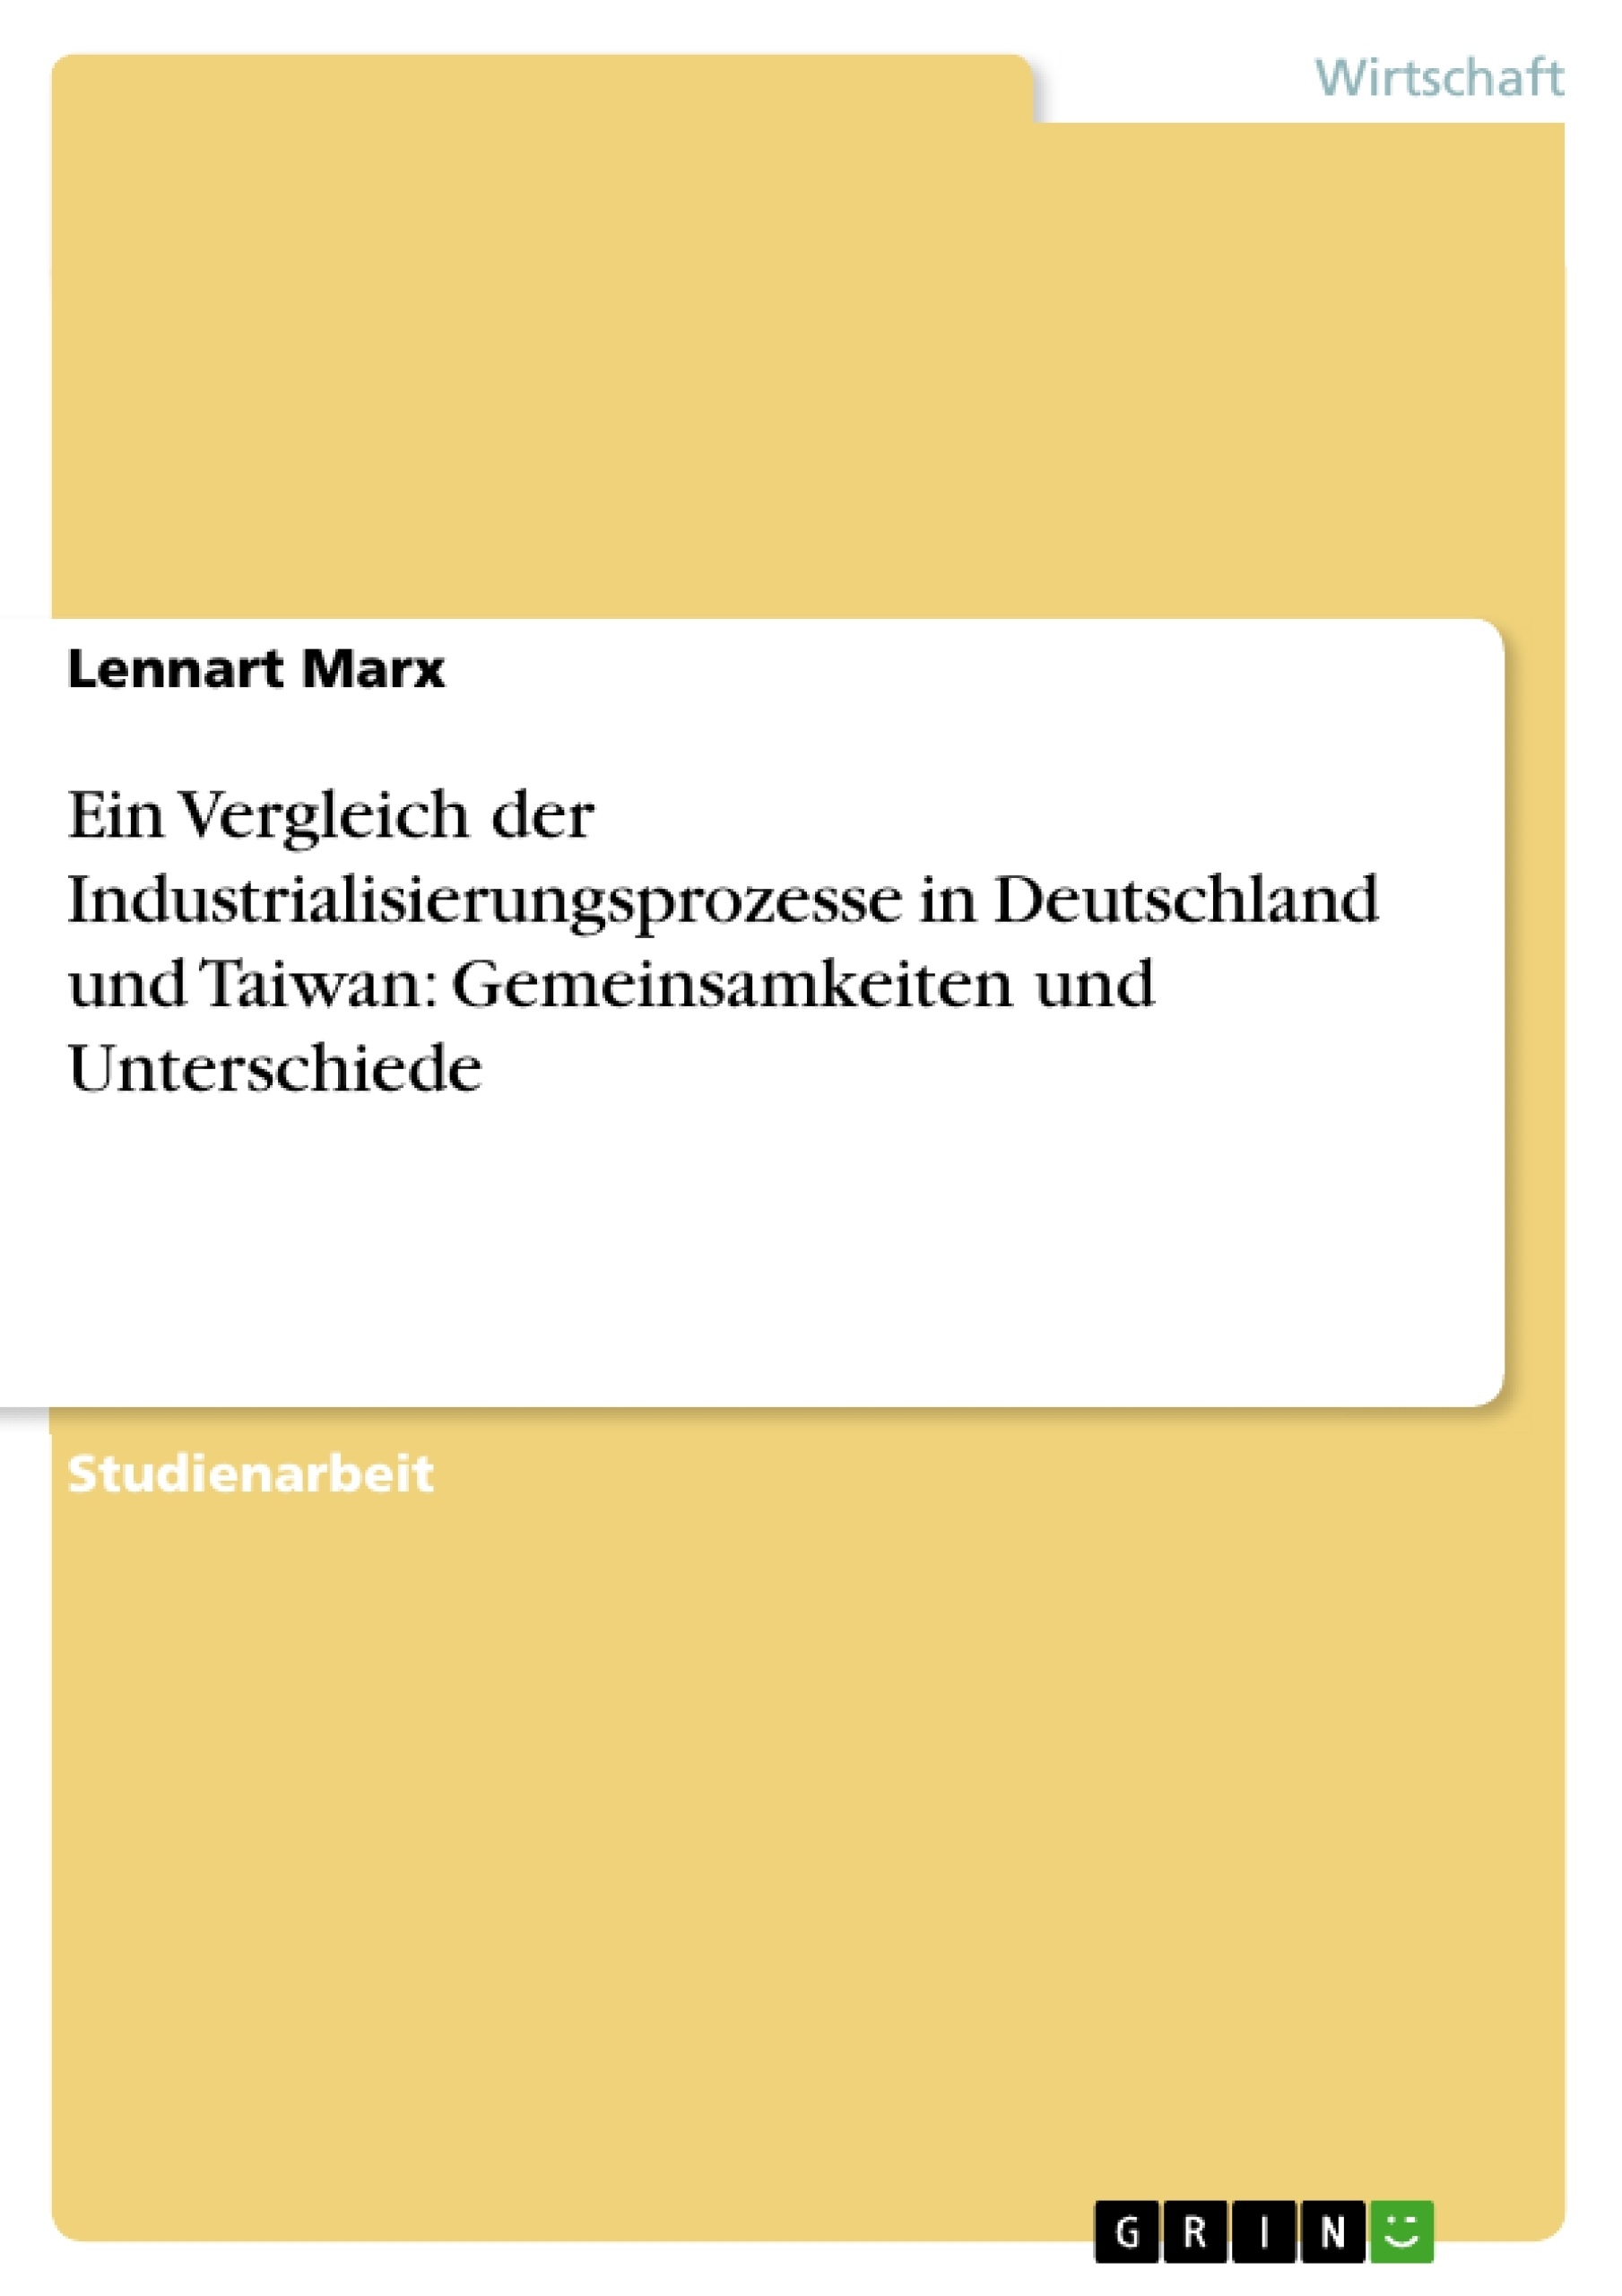 Titre: Ein Vergleich der Industrialisierungsprozesse in Deutschland und Taiwan: Gemeinsamkeiten und Unterschiede